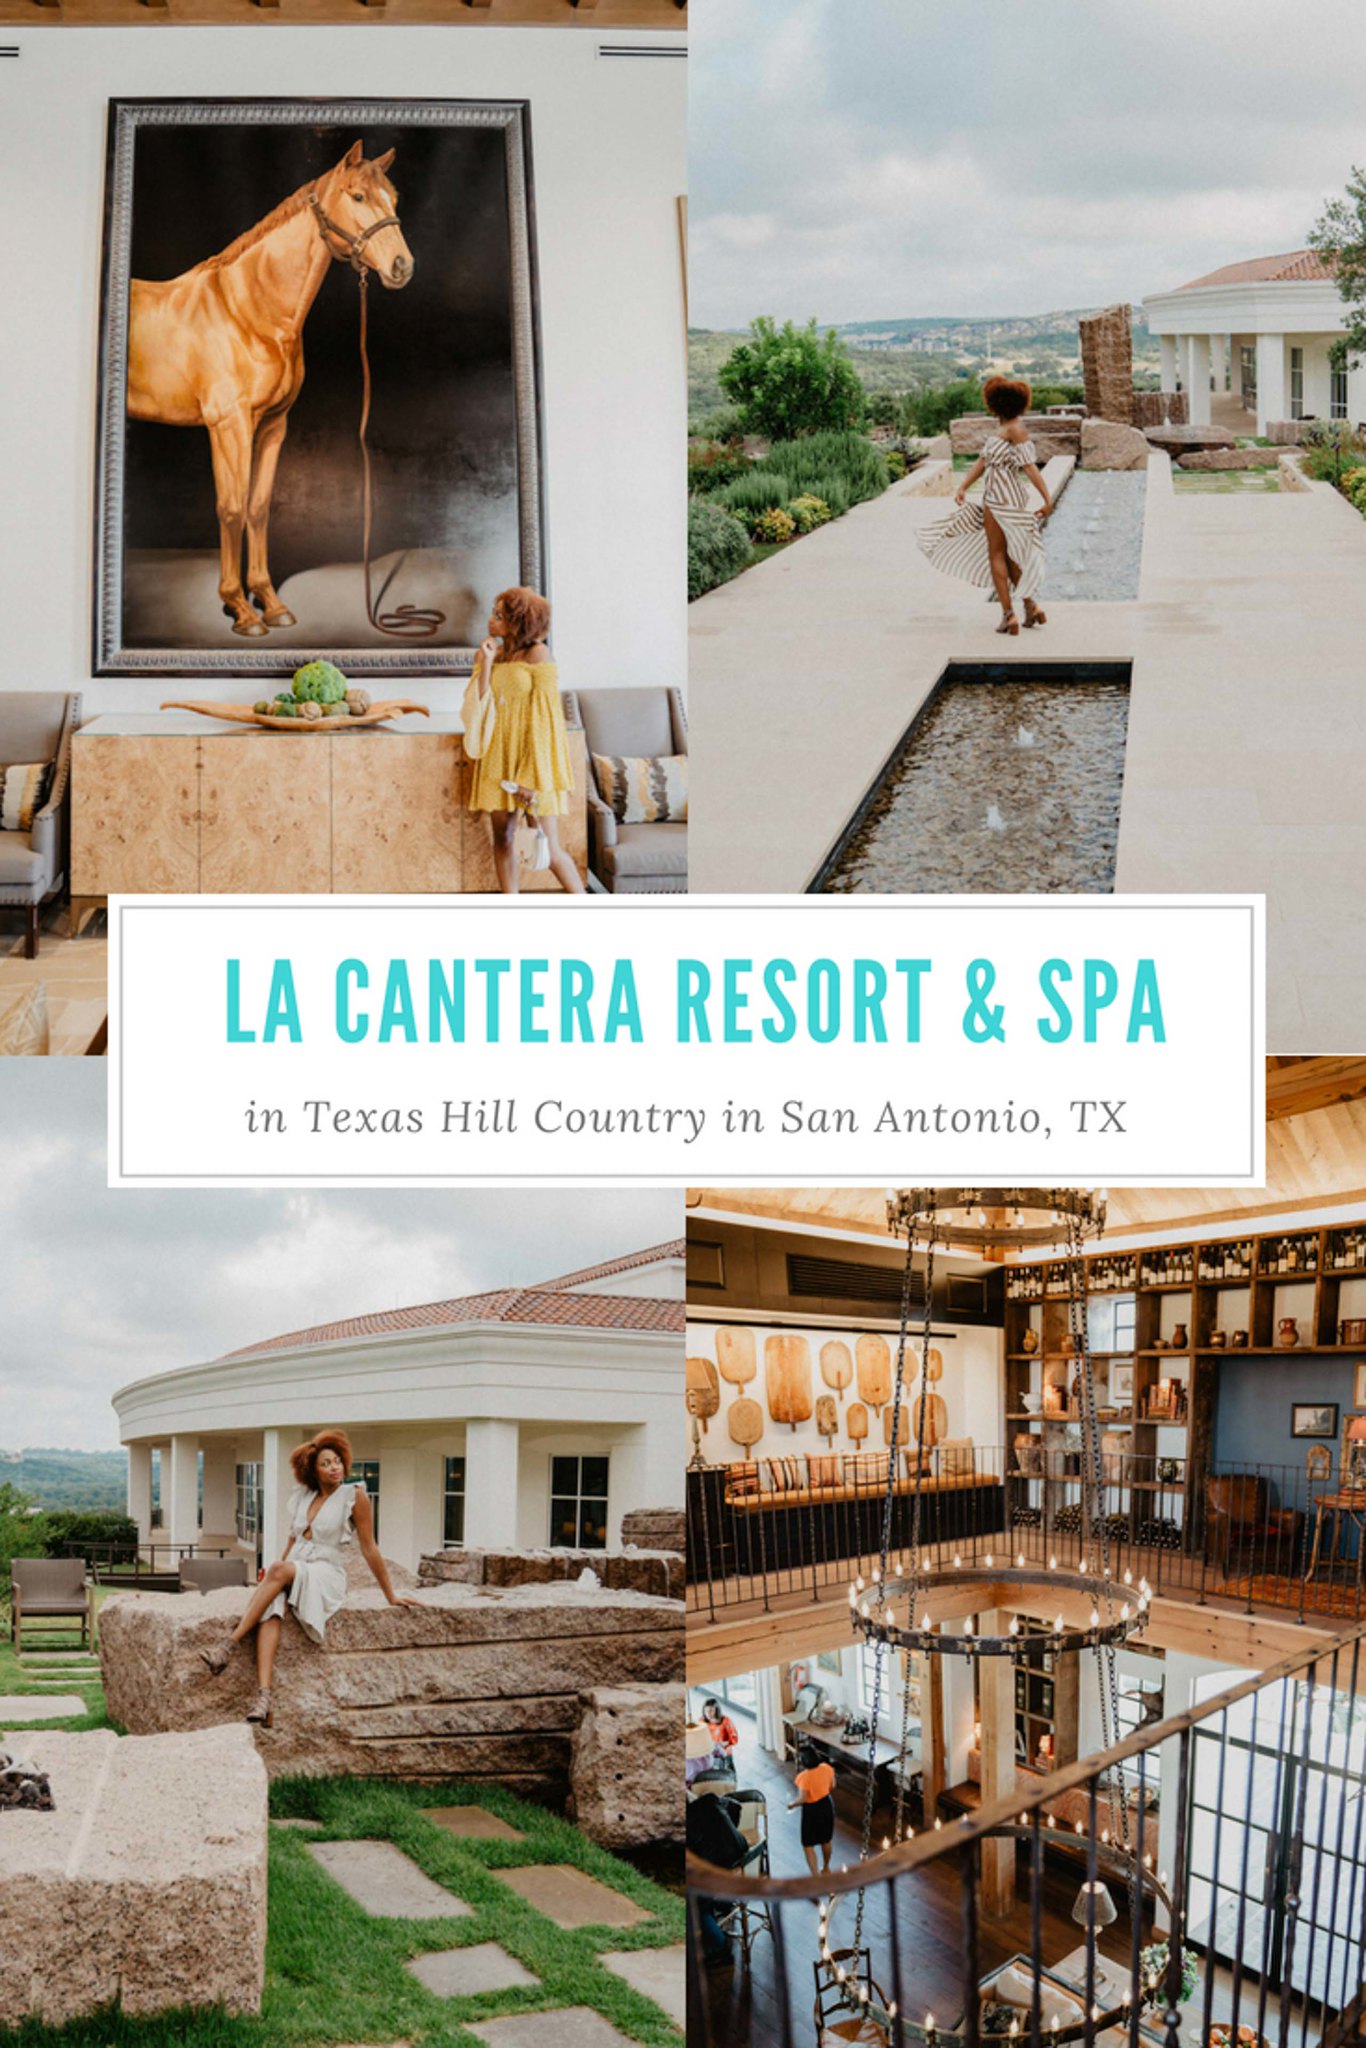 About The Local Area, La Cantera Resort & Spa